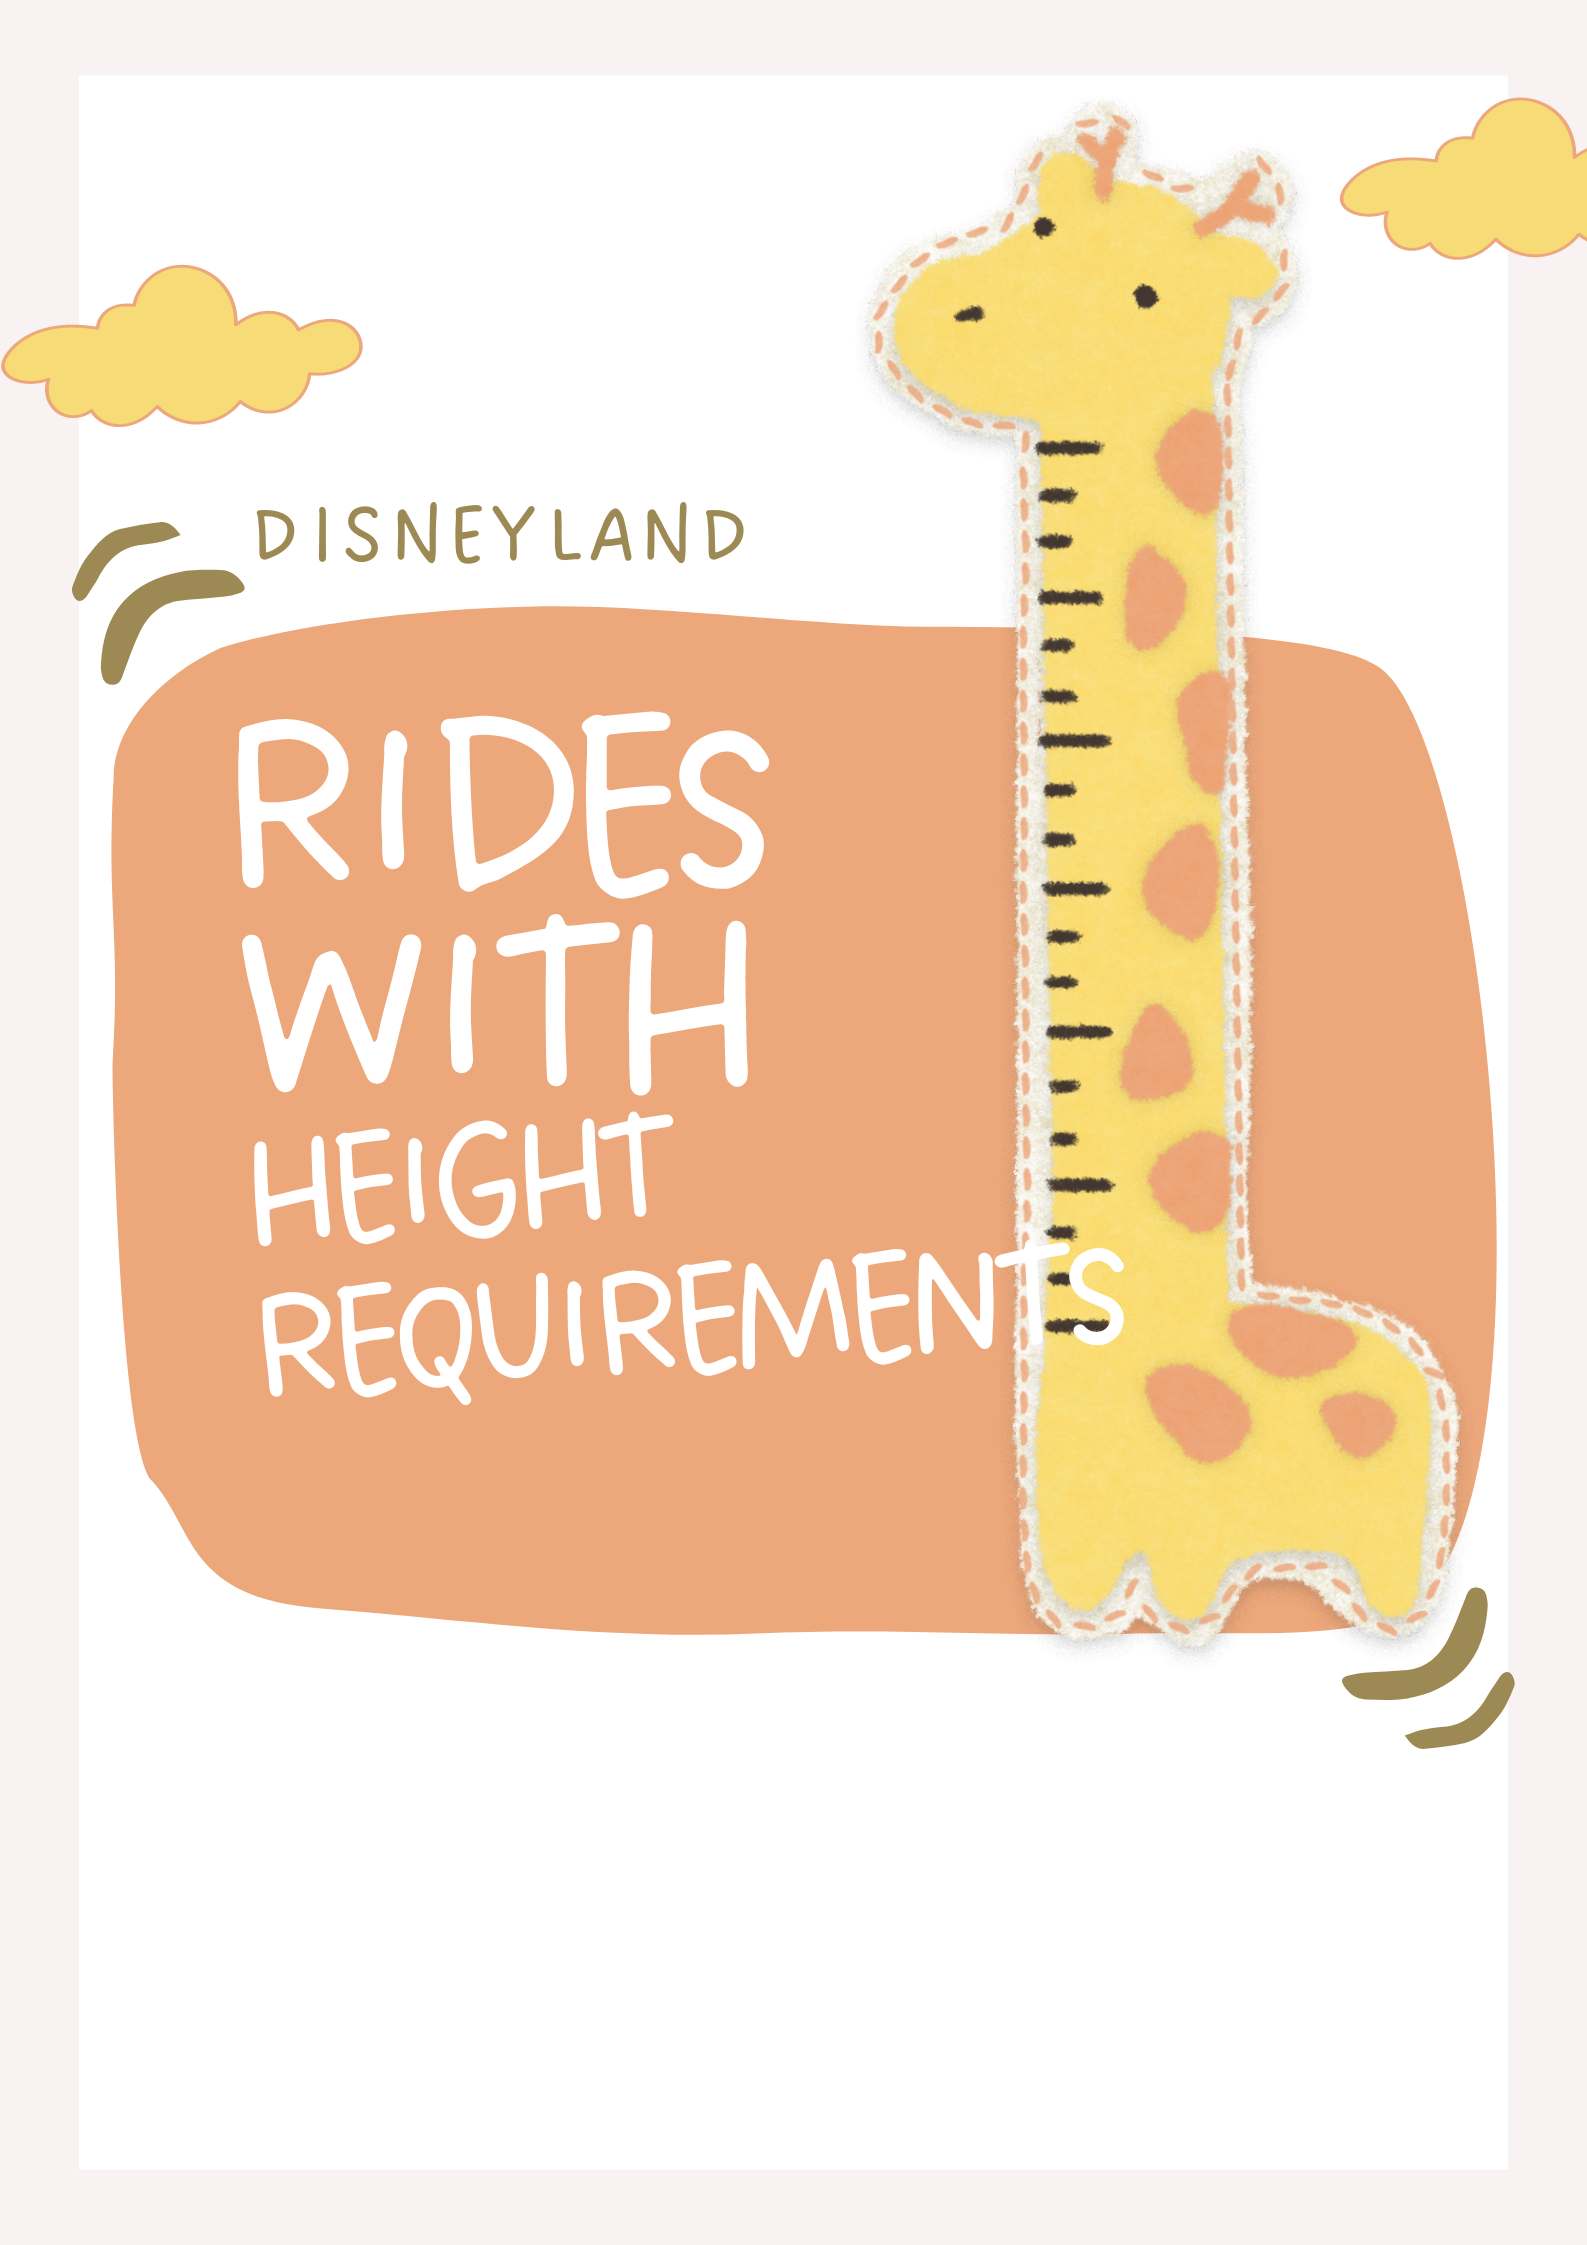 Disneyland height requirement download image